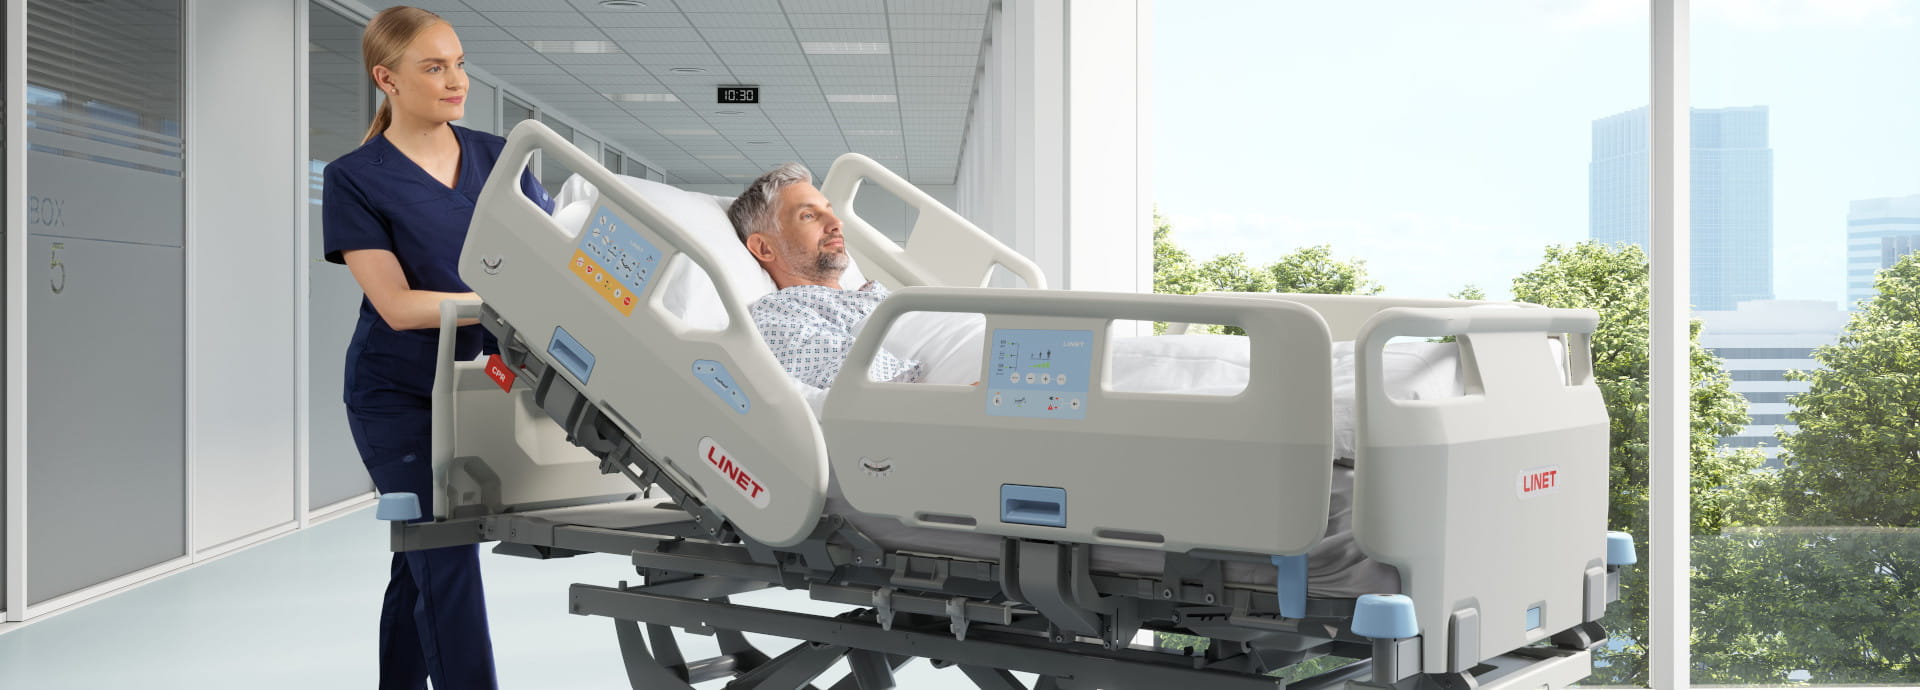 Essenza ist ein niedriges Krankenhausbett, das die die Sicherheit für alle Patienten verbessert